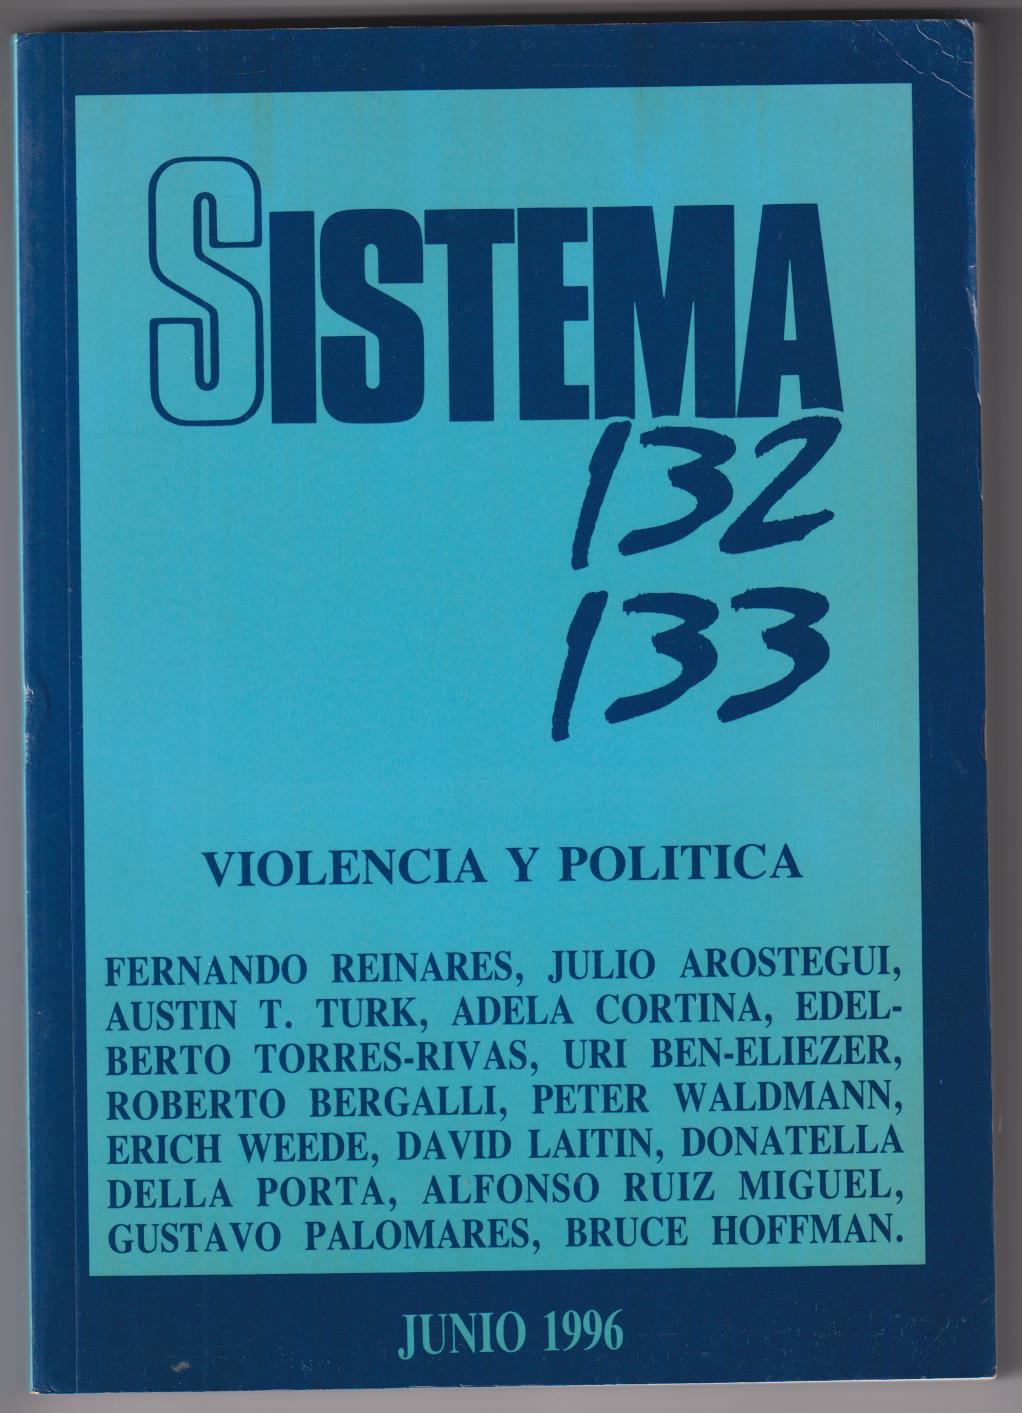 Sistema 132 133. Violencia y Política. Junio 1996. SIN USAR (304) SIN USAR